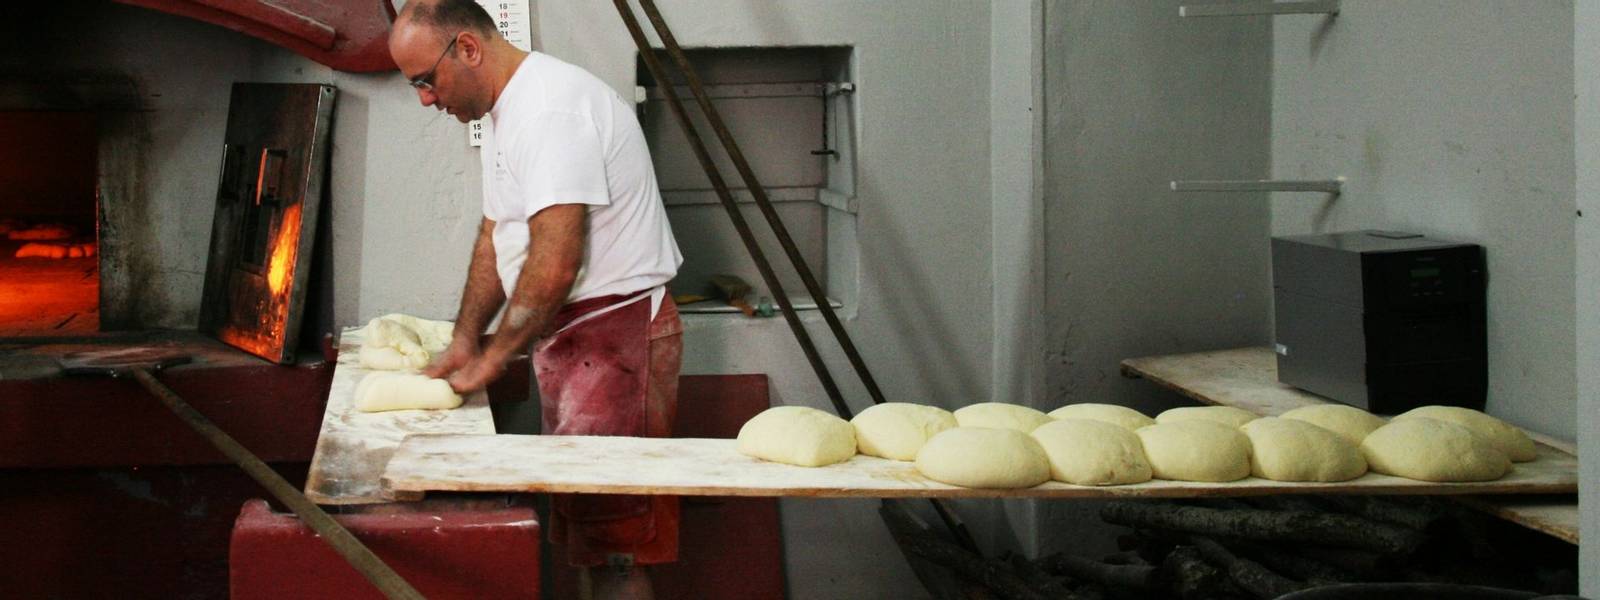 Italy - Bakery - Making Bread.jpg